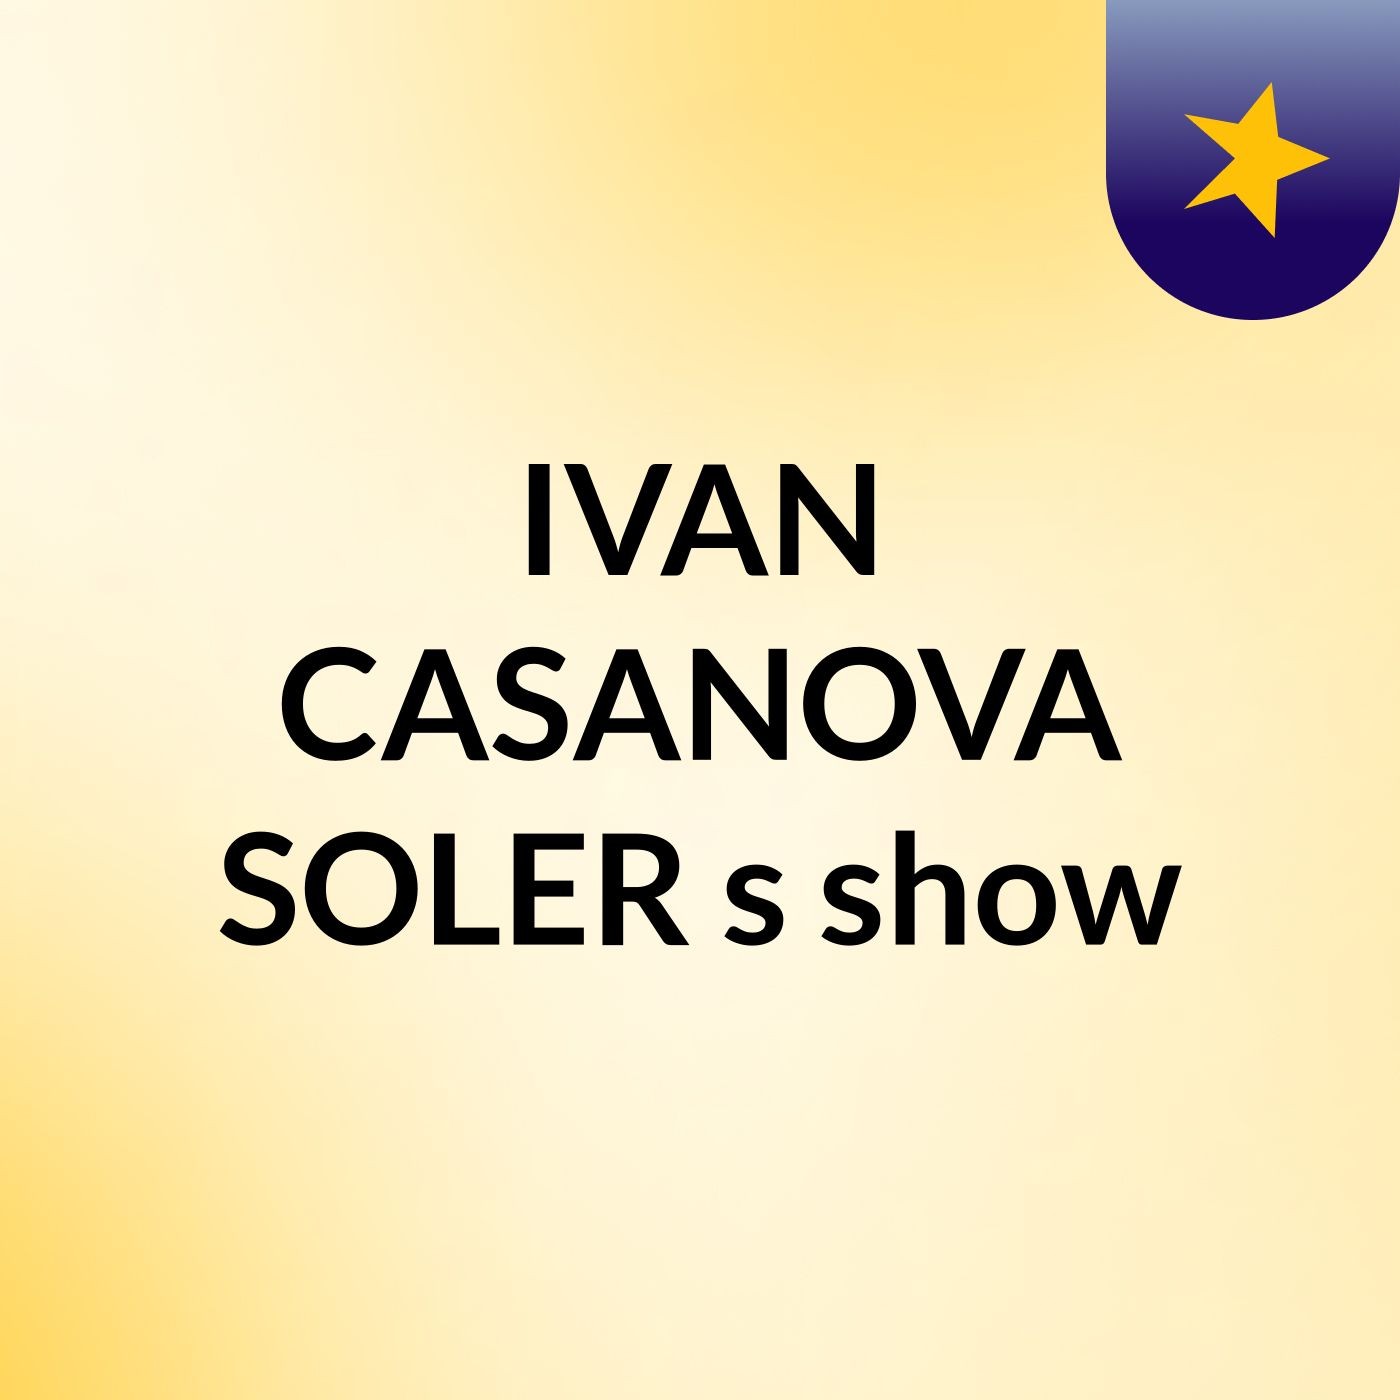 IVAN CASANOVA SOLER's show